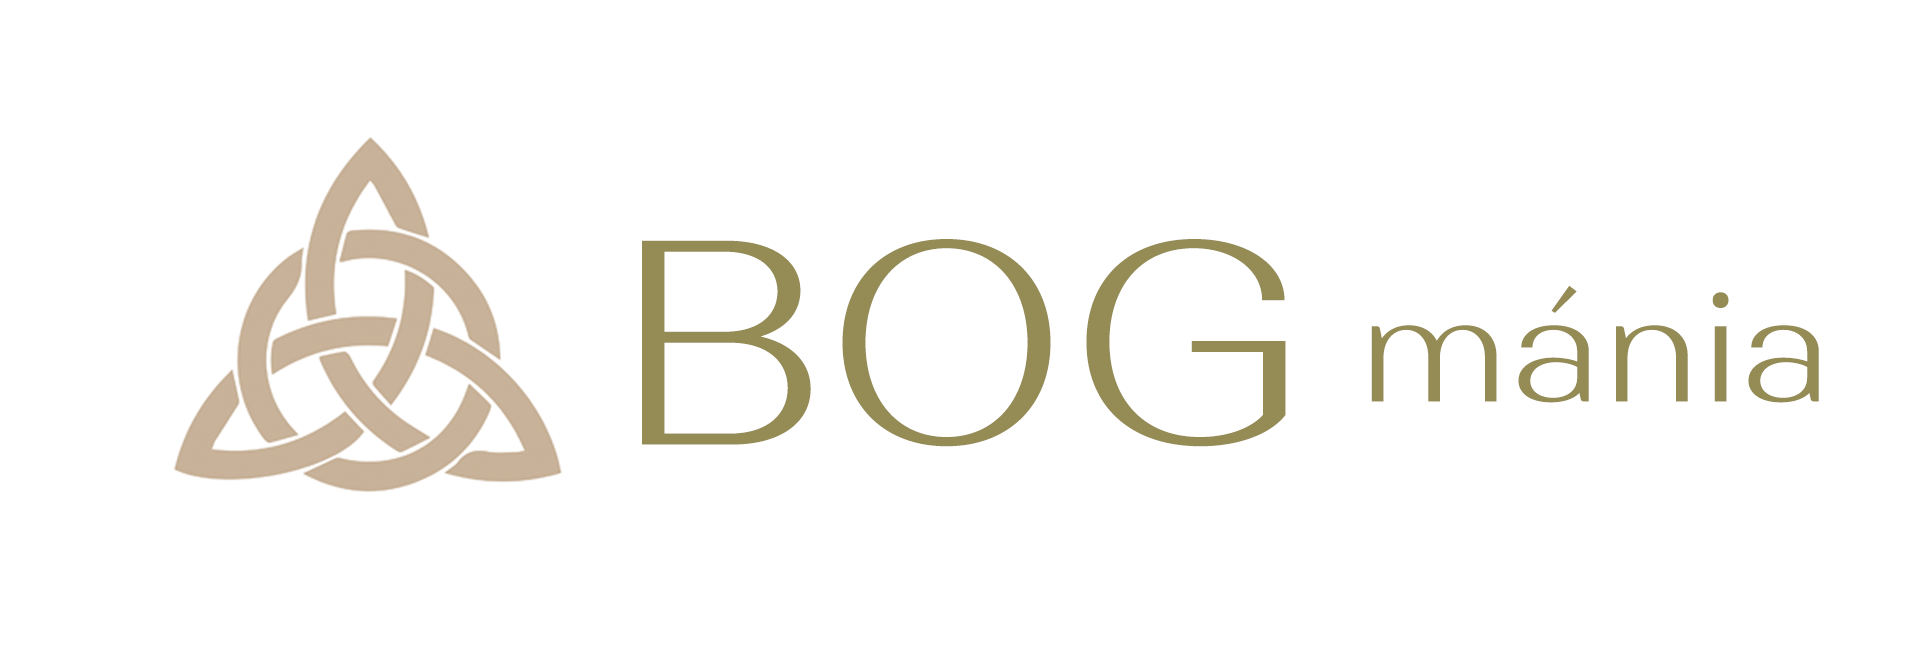 BOG mánia logó barna triquetra réz szöveg 1920-649 kp banner kész kisebb másolat